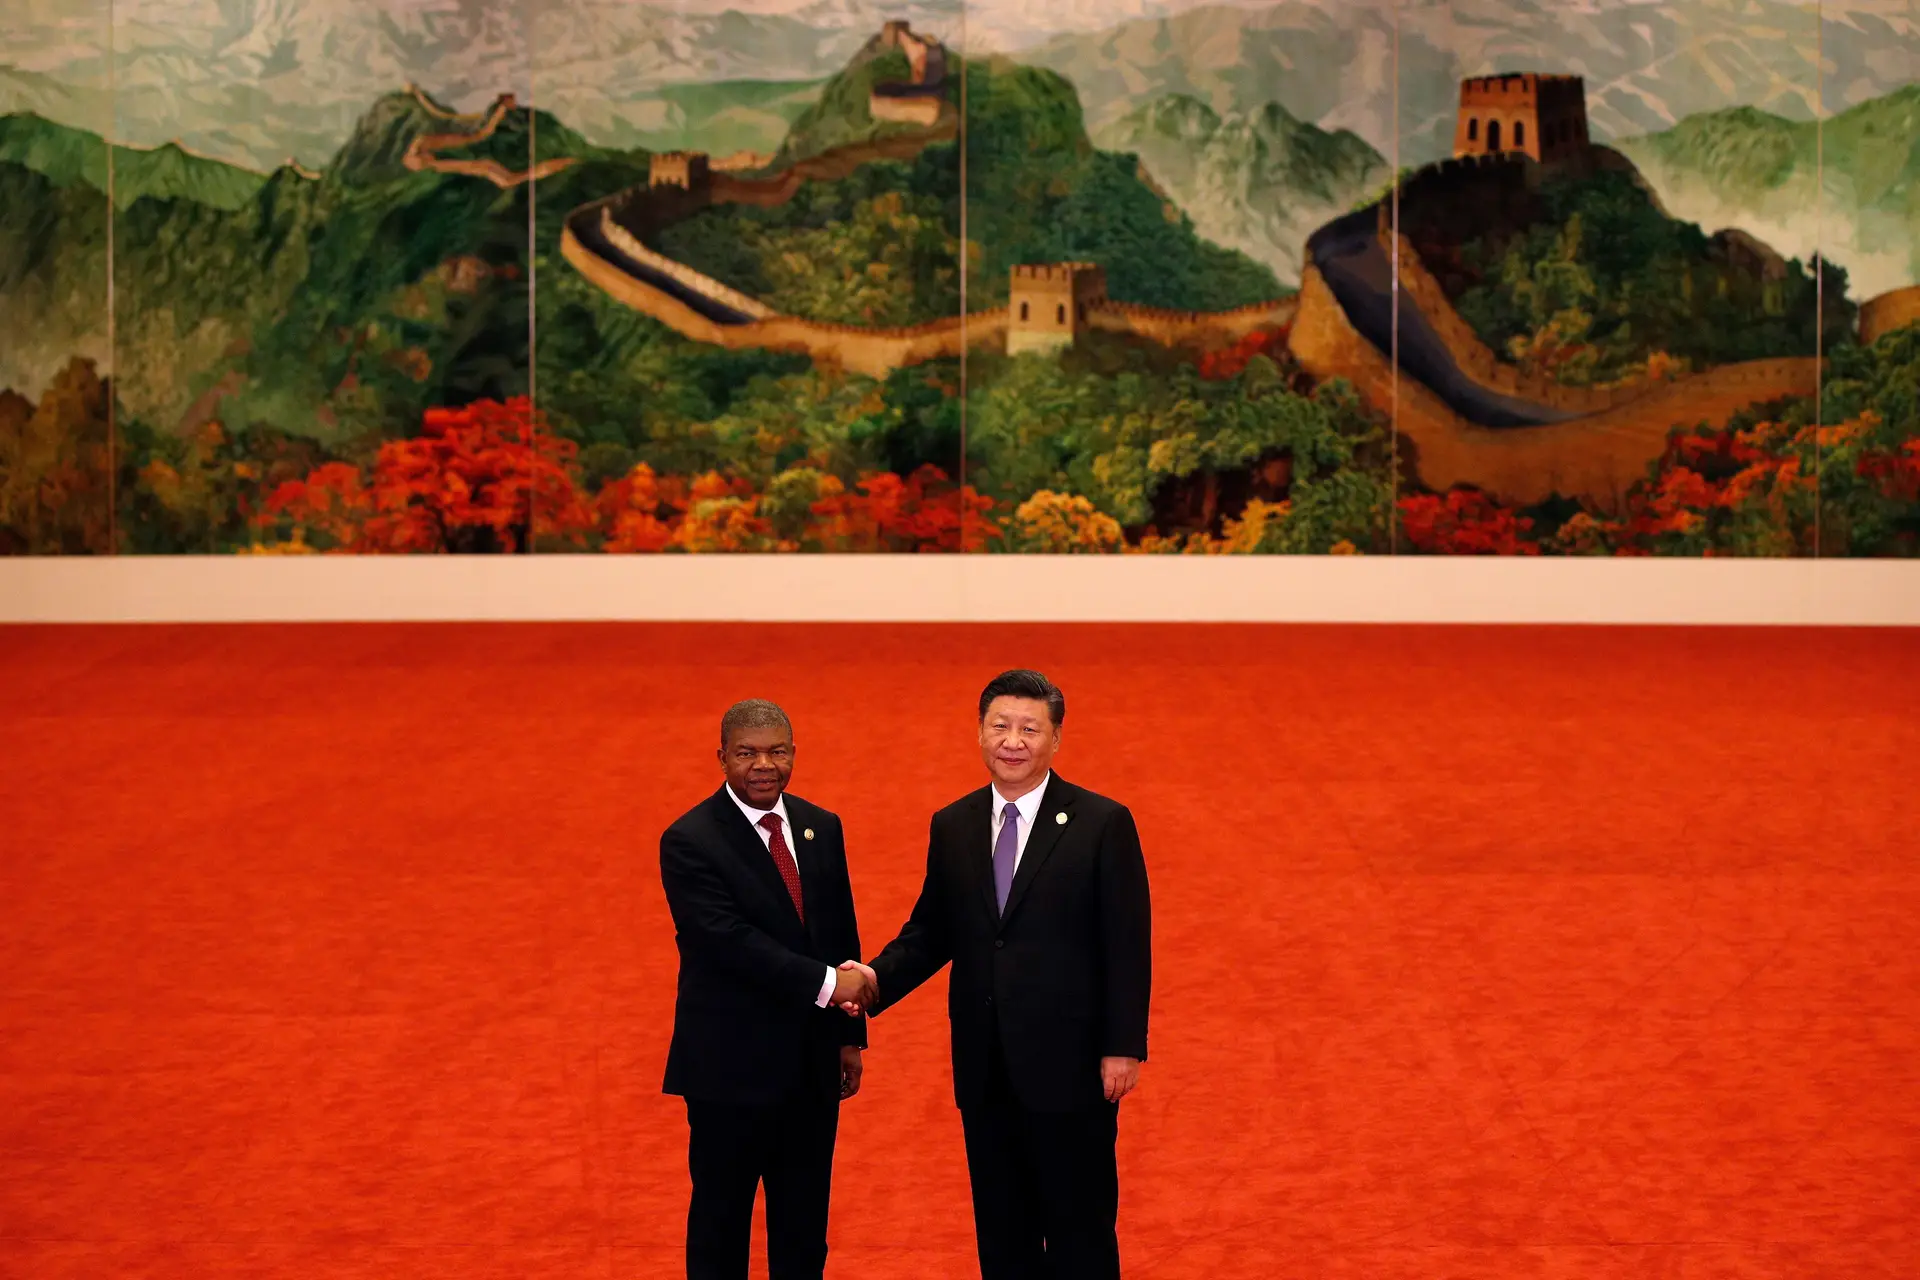 Quase um ano depois de tomar posse como Presidente de Angola, João Lourenço (à esquerda) foi recebido pelo homólogo chinês, Xi Jinping, no Grande Salão do Povo, em Pequim